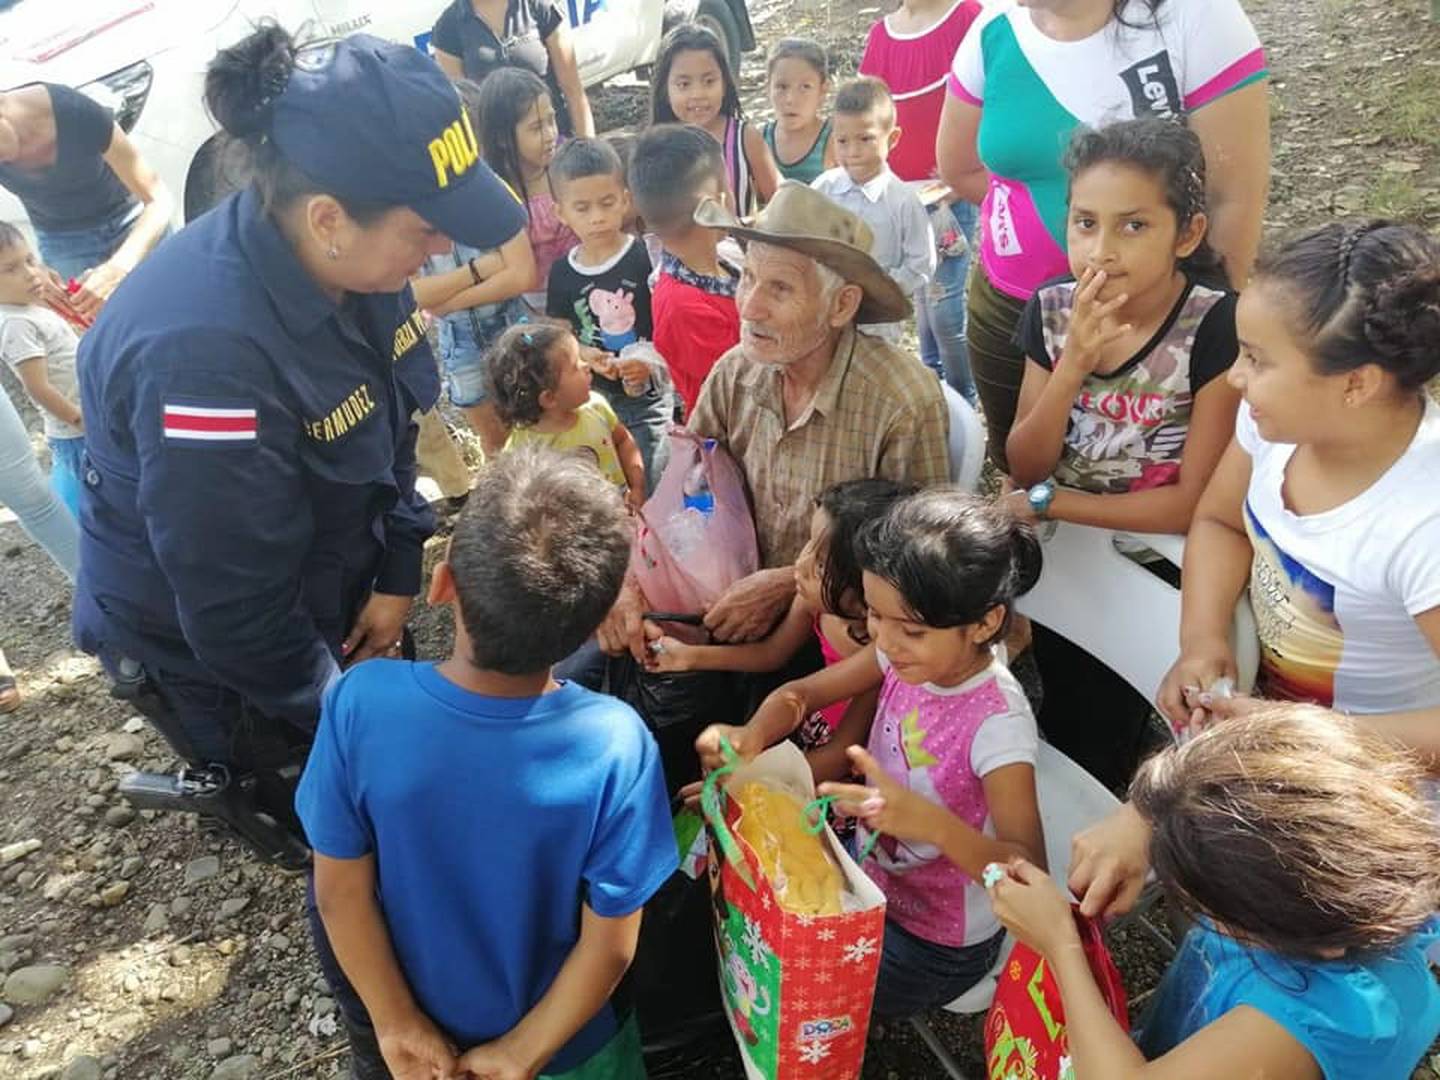 Oficiales de la Fuerza Pública de Upala organizan fiesta para ayudar a familia de escazos recursos en Upala. Foto MSP.